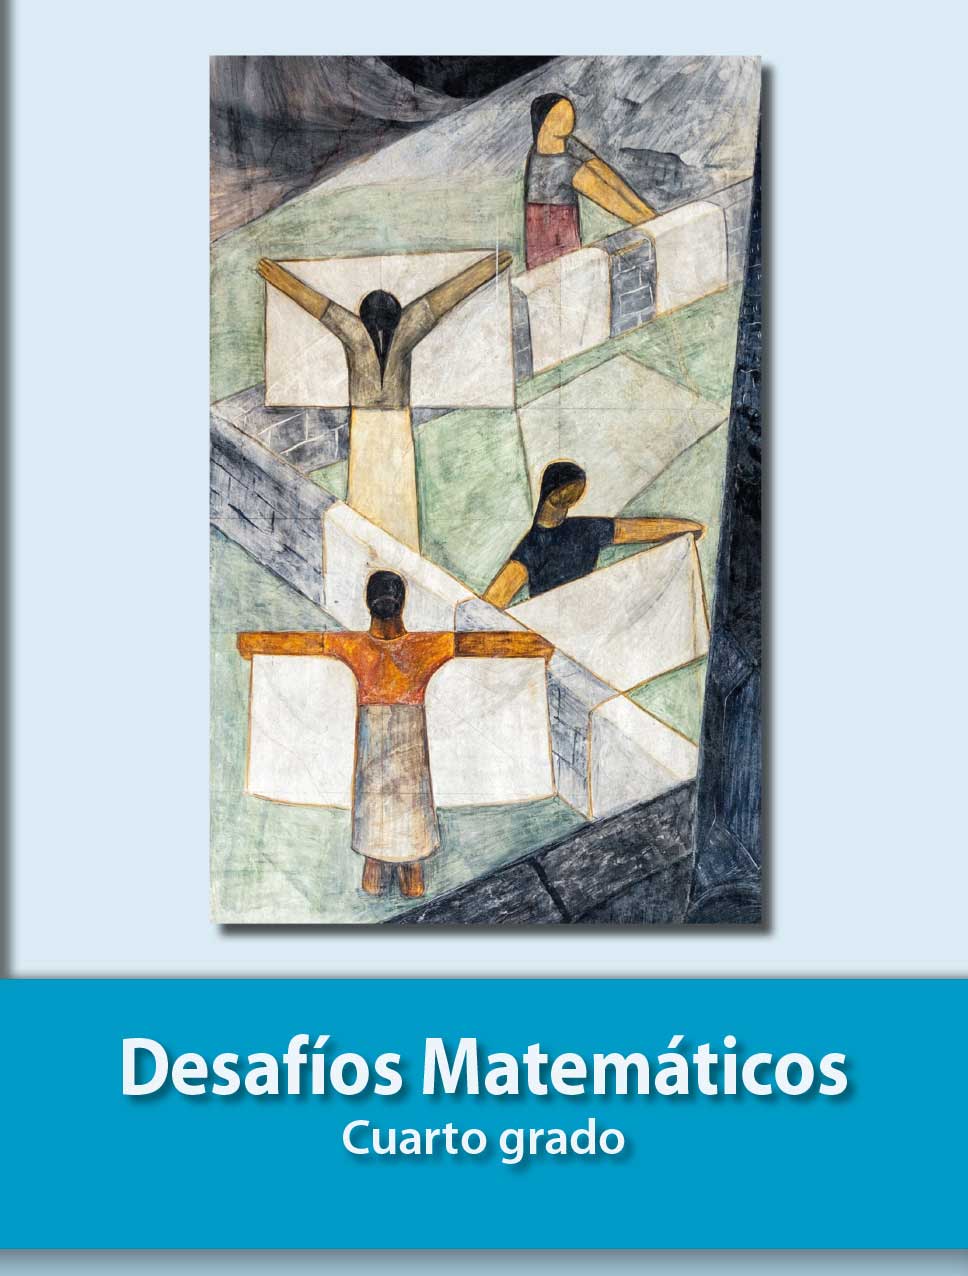 Desafios Matematicos Libro Para El Alumno Libro De Primaria Grado 4 Comision Nacional De Libros De Texto Gratuitos